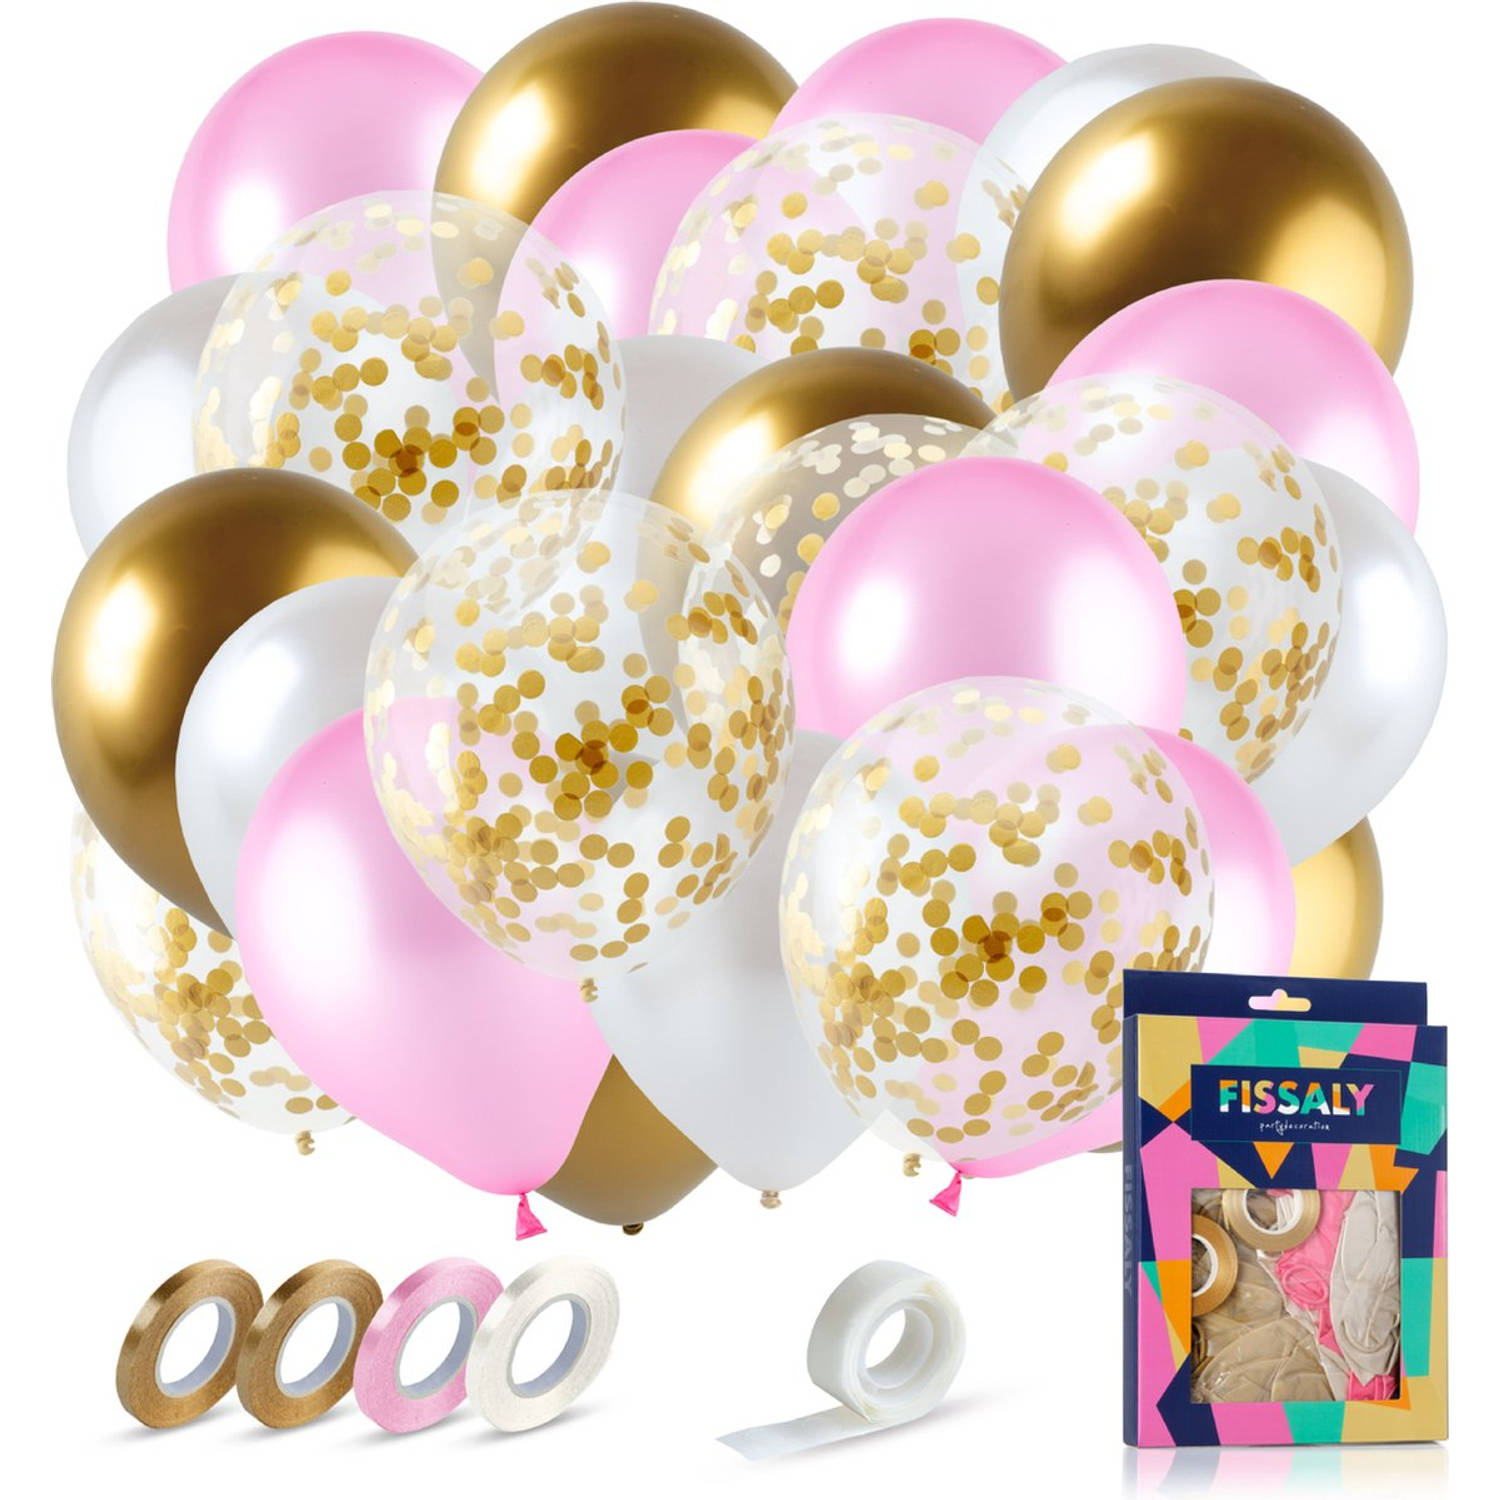 Fissaly® 40 Stuks Goud, Creme wit, Roze & Papieren Confetti Goud Latex Ballonnen met Accessoires - Helium - Decoratie